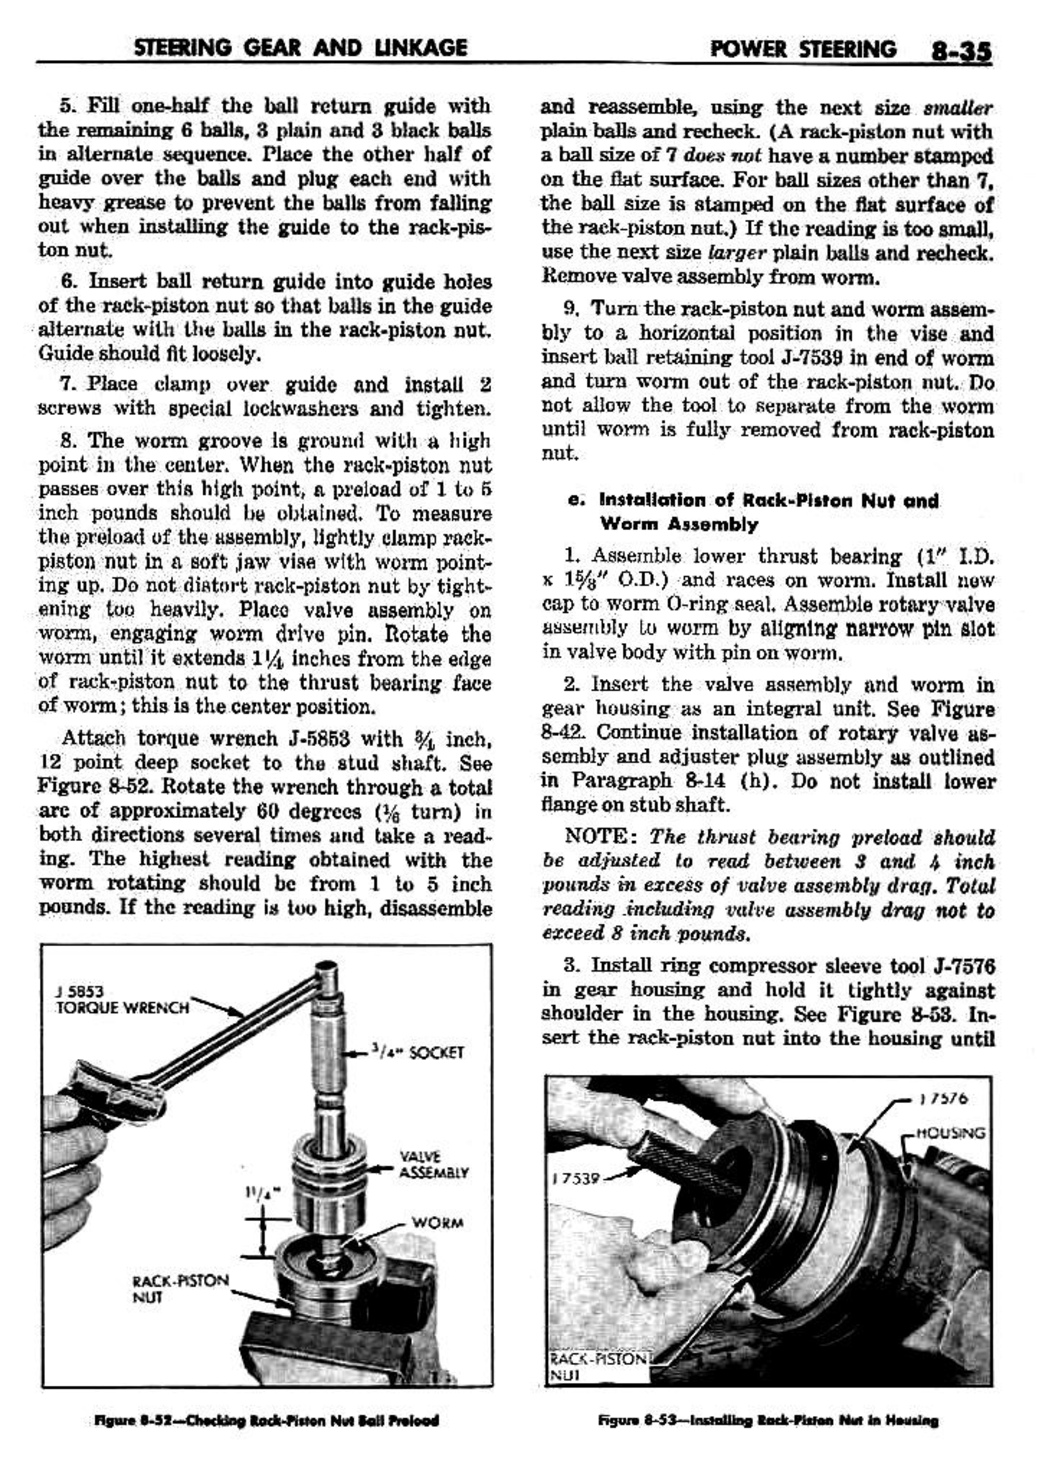 n_09 1959 Buick Shop Manual - Steering-035-035.jpg